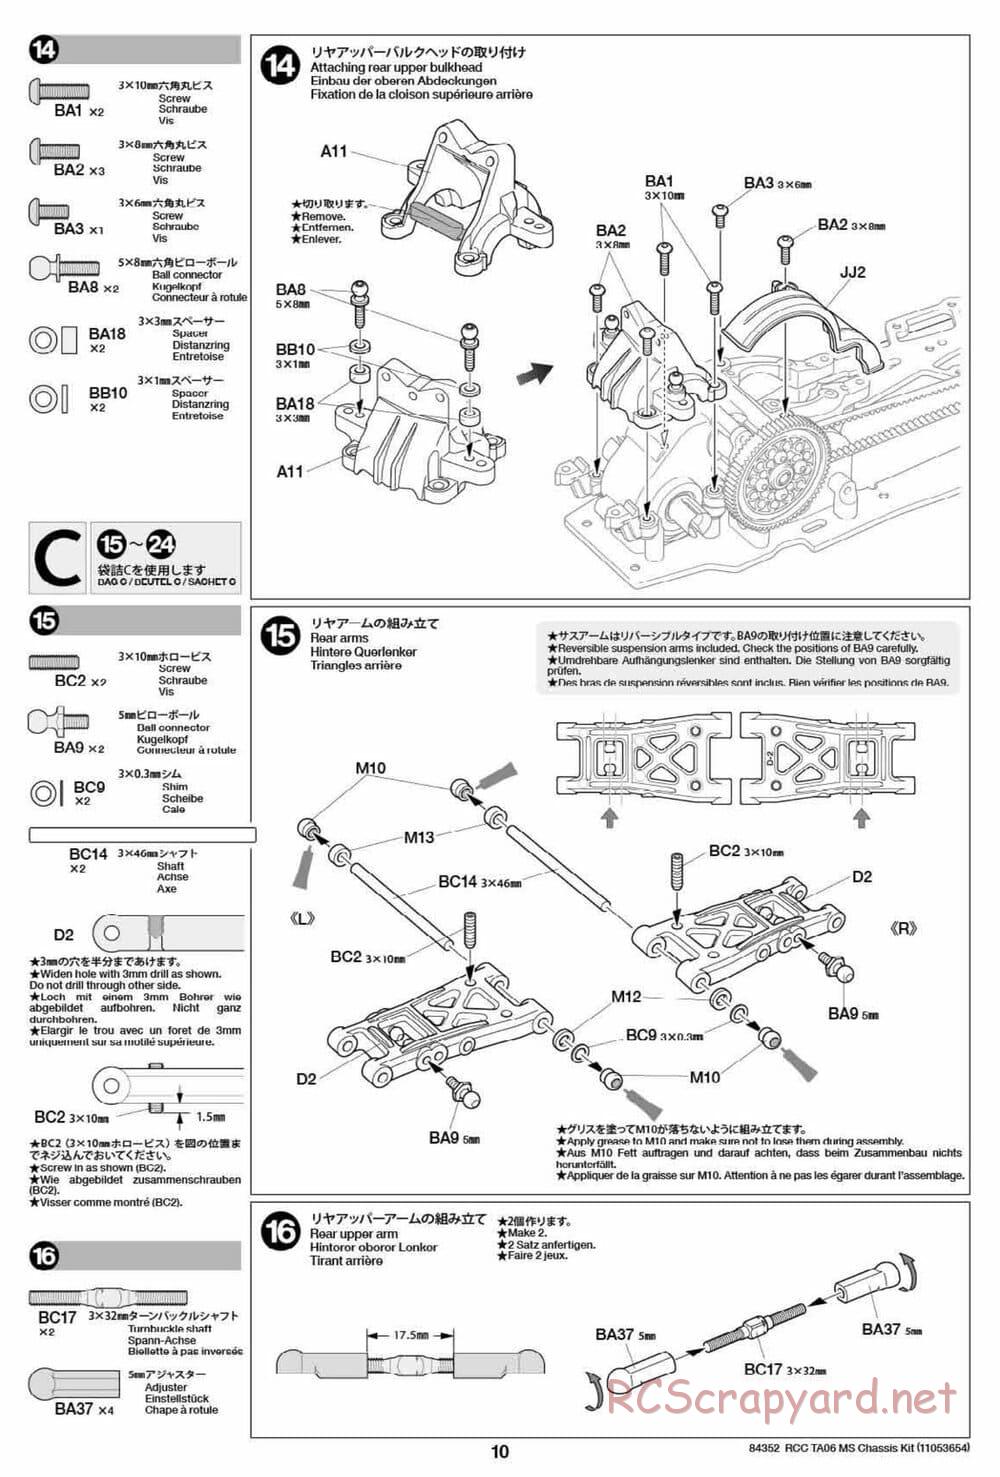 Tamiya - TA06 MS Chassis - Manual - Page 10